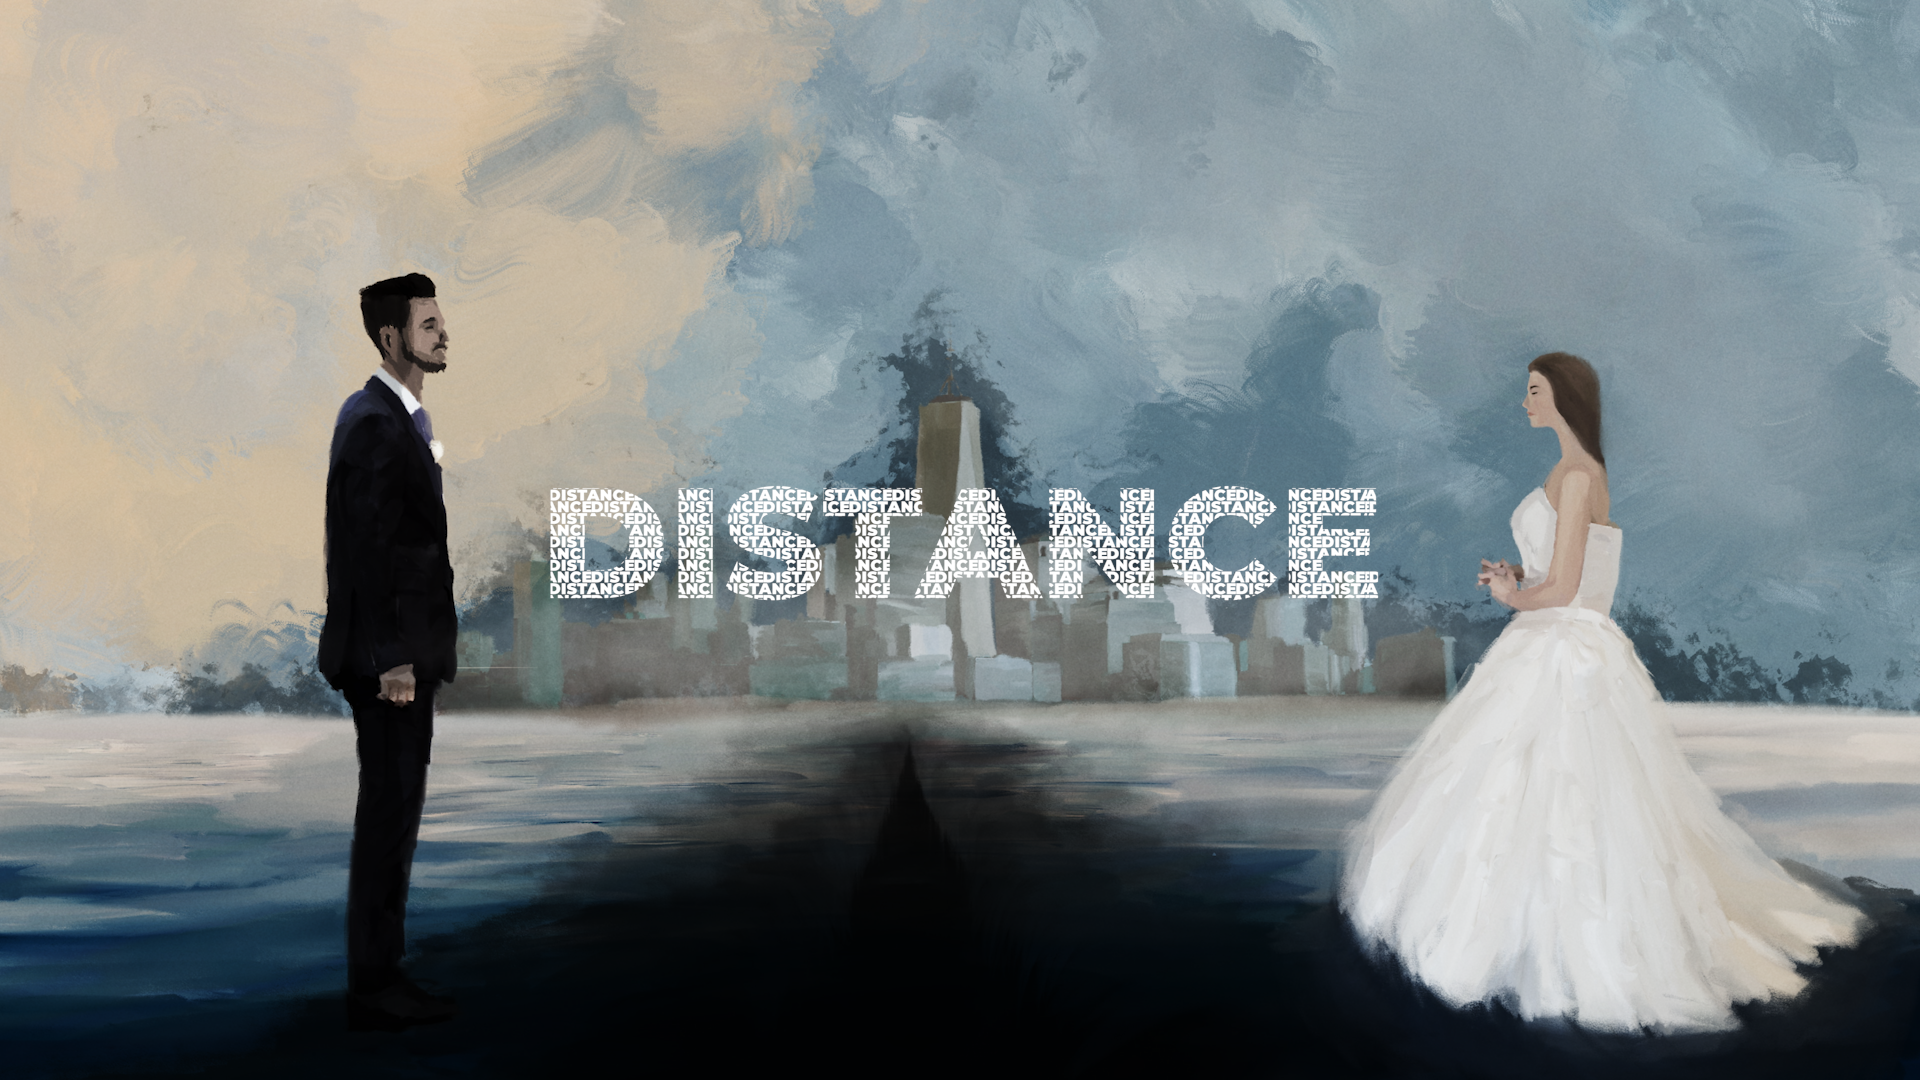 製作 Snrn Co 映画監督 相馬寿樹が描く実話を基にした短編映画 Distance オフィシャルサイトにて世界同時配信中 シェアネクスト株式会社のプレスリリース